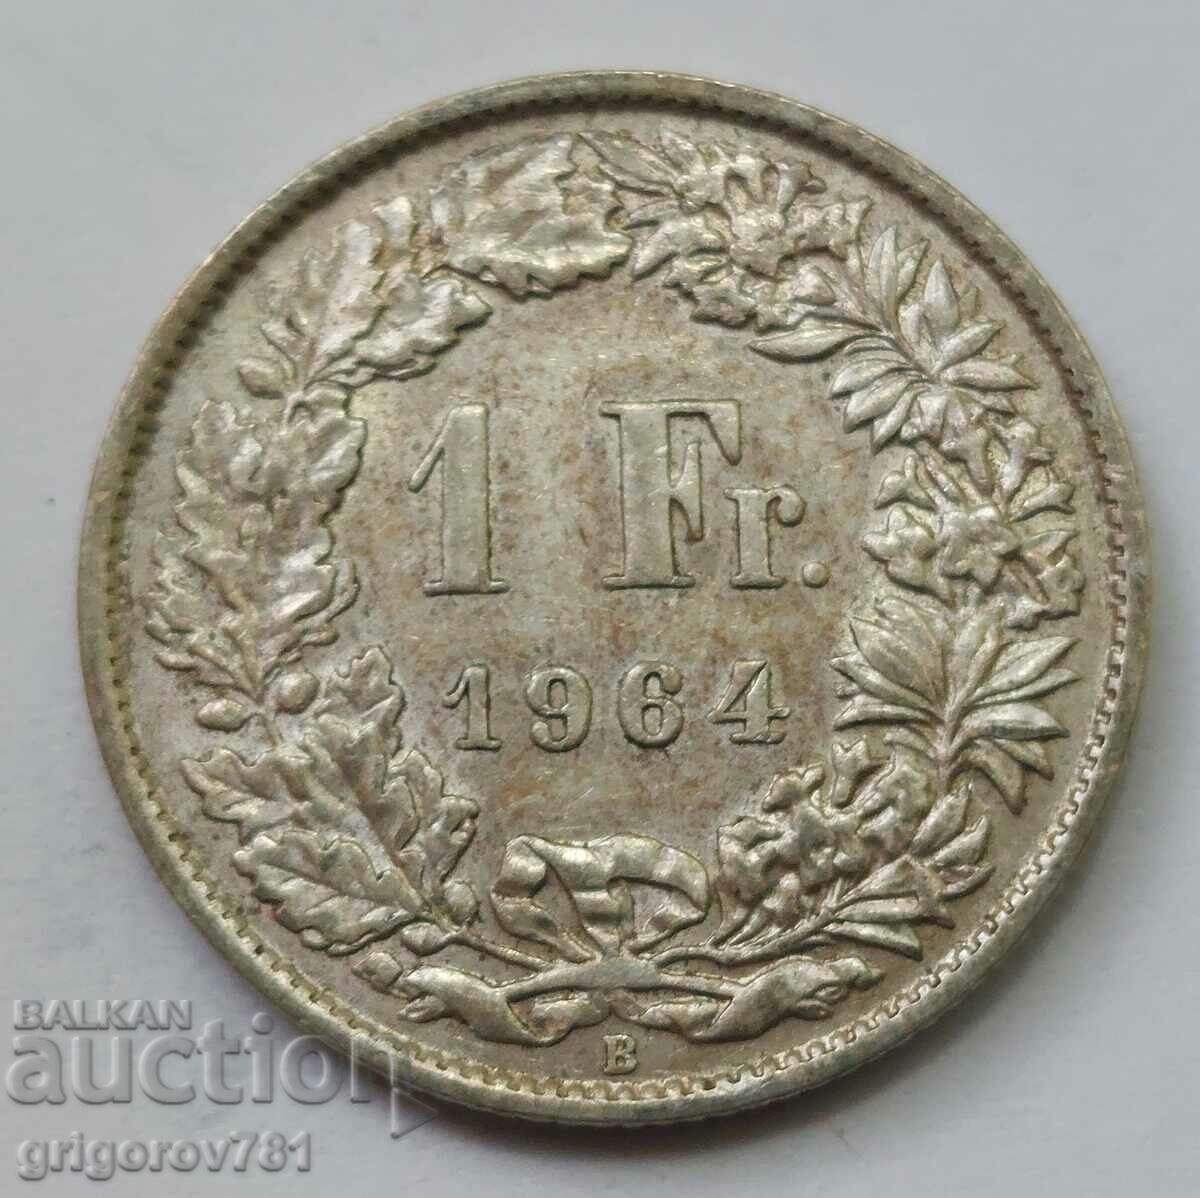 Ασήμι 1 φράγκου Ελβετία 1964 Β - Ασημένιο νόμισμα #37